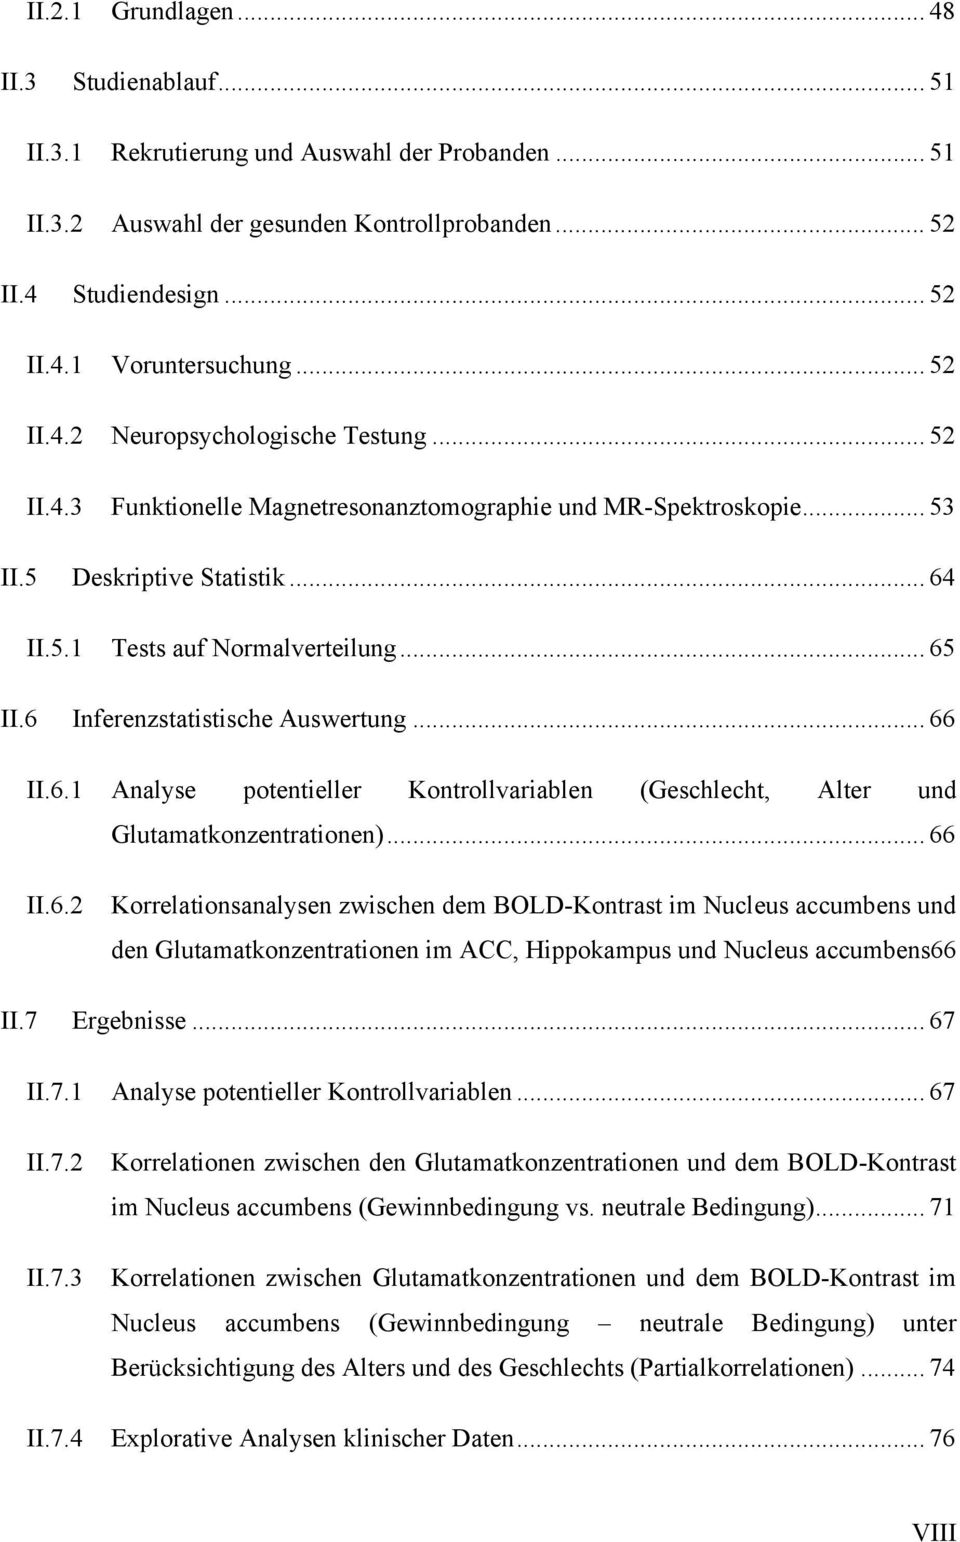 6 Inferenzstatistische Auswertung... 66 II.6.1 Analyse potentieller Kontrollvariablen (Geschlecht, Alter und Glutamatkonzentrationen)... 66 II.6.2 Korrelationsanalysen zwischen dem BOLD-Kontrast im Nucleus accumbens und den Glutamatkonzentrationen im ACC, Hippokampus und Nucleus accumbens66 II.